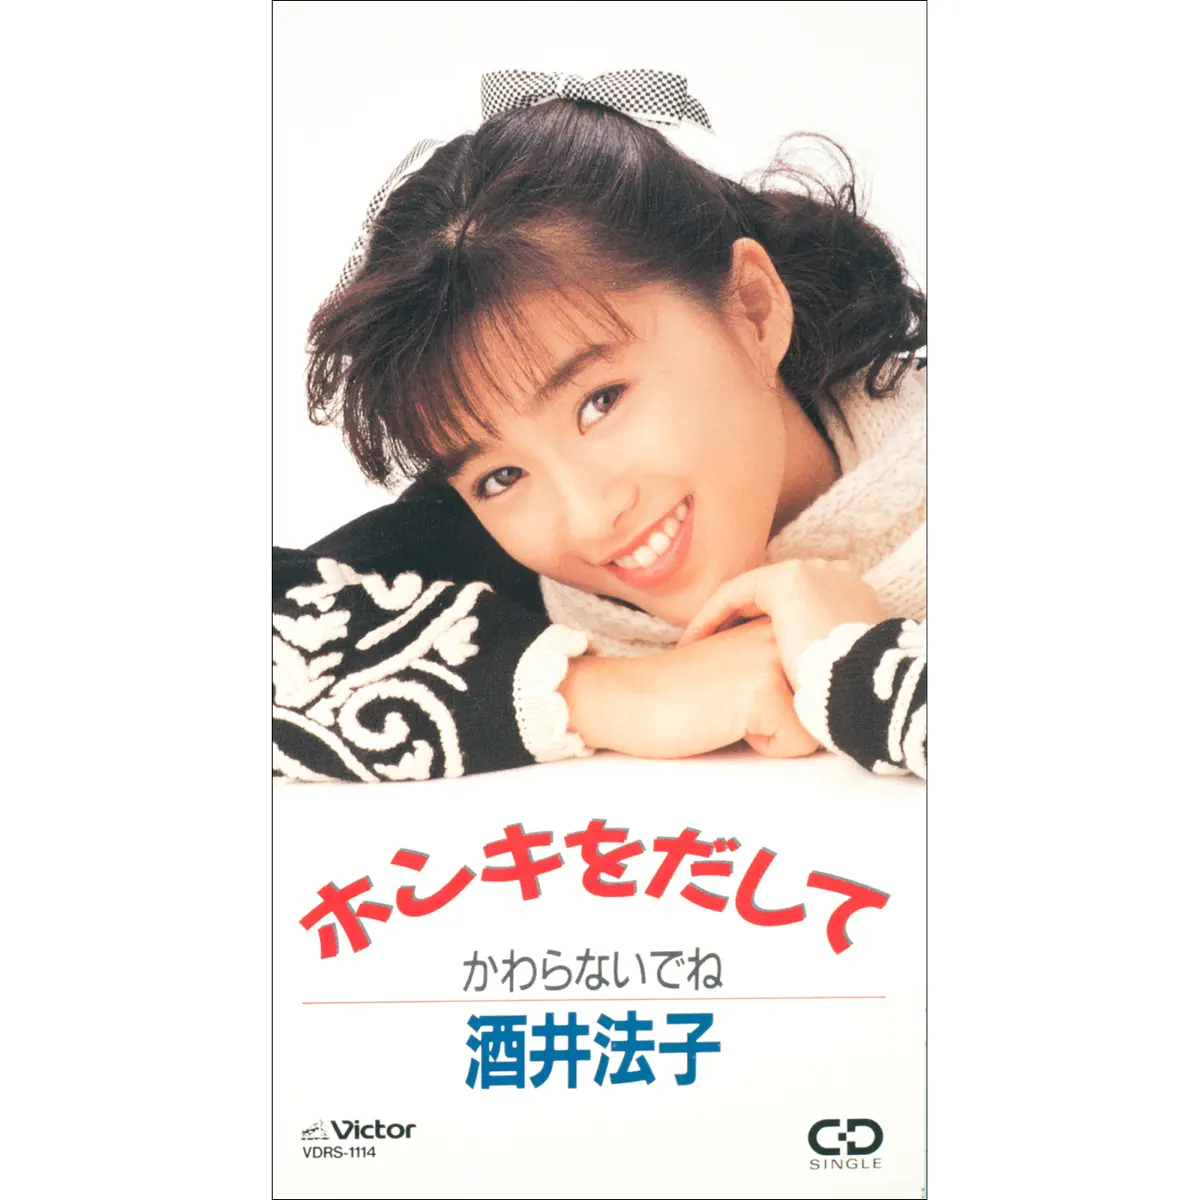 酒井法子 - ホンキをだして - EP (1989) [iTunes Plus AAC M4A]-新房子